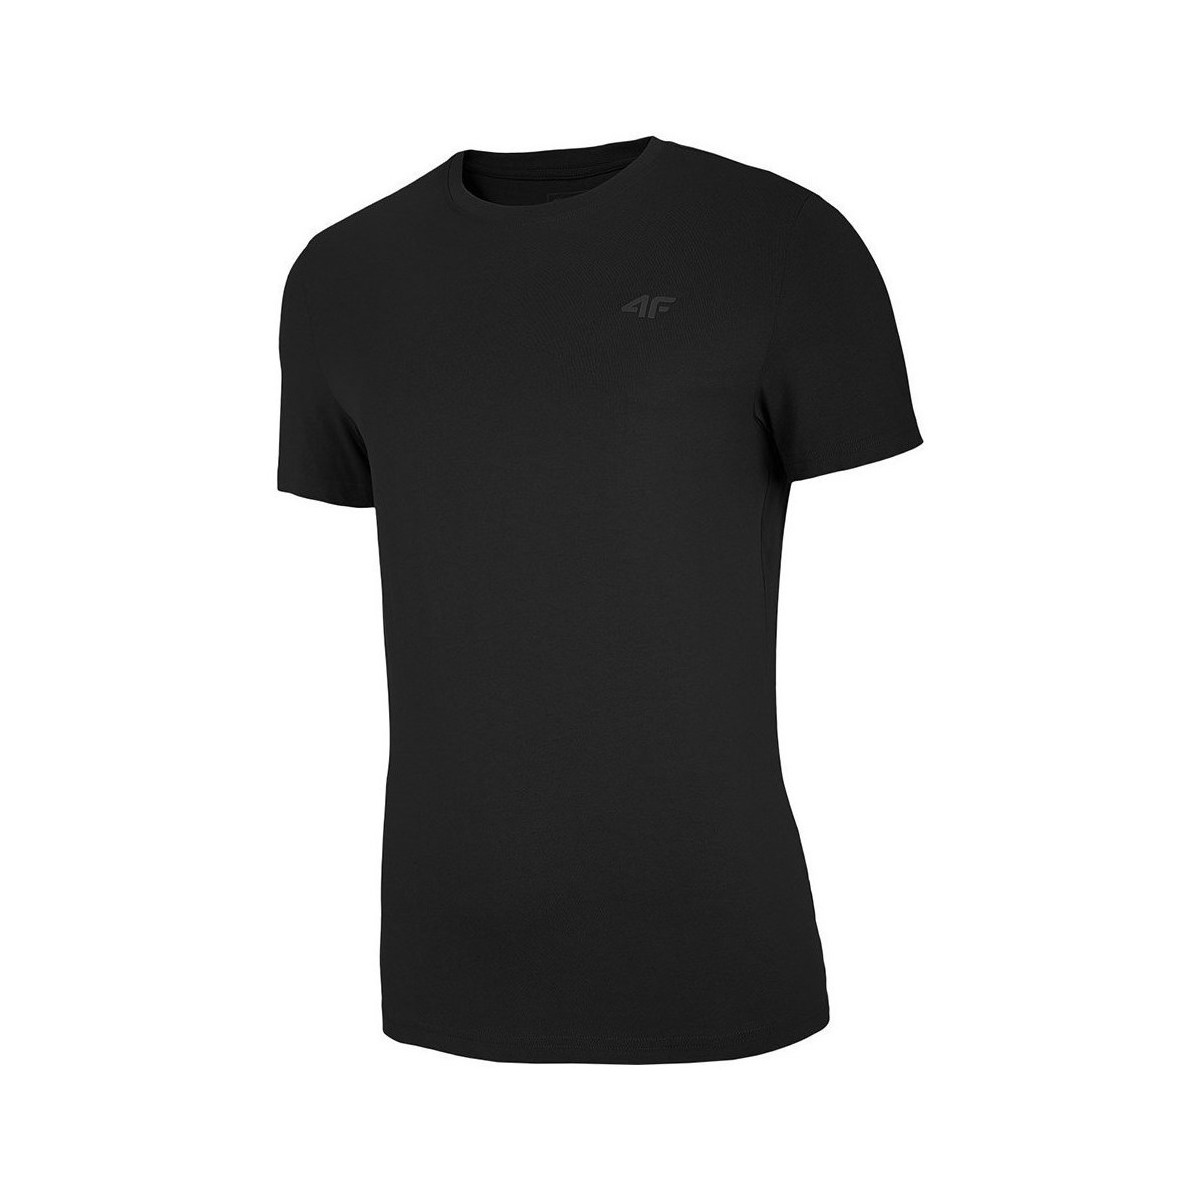 Abbigliamento Uomo T-shirt maniche corte 4F TSM003 Nero